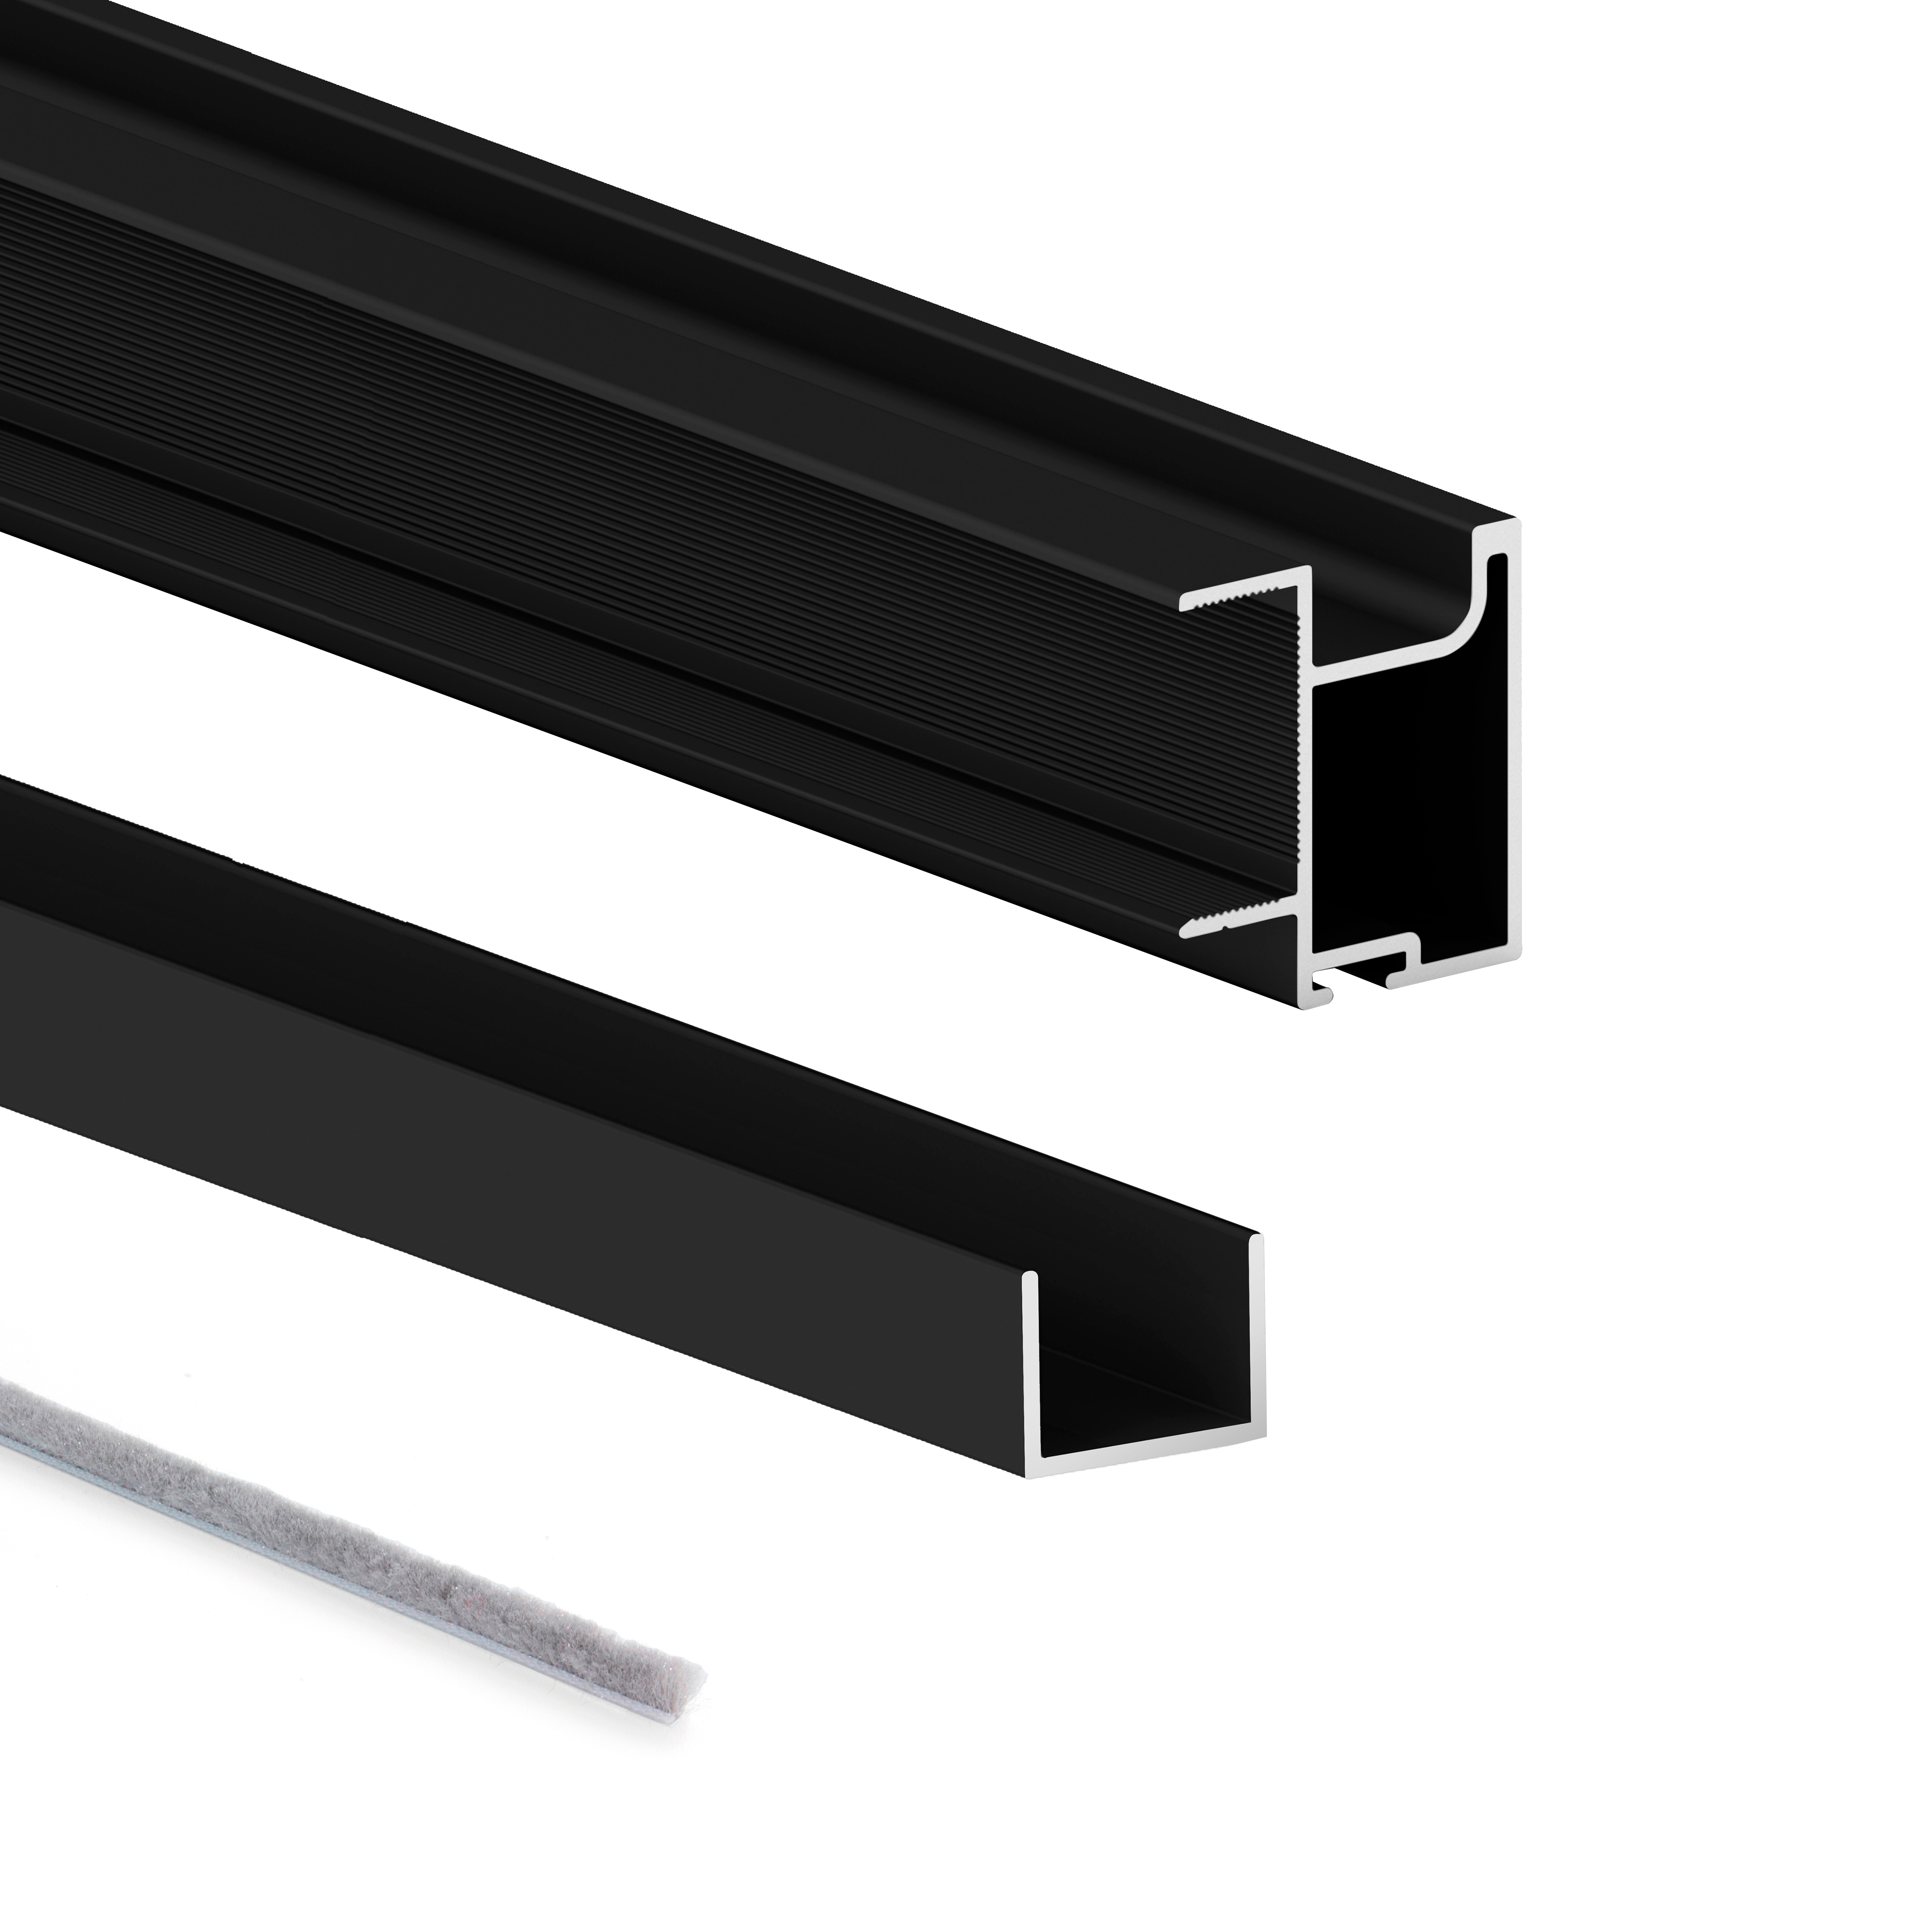 Kit de ferrures et de poignées pour une porte coulissante Line 19, pour une  épaisseur de 19mm, longueur 2,7m, Aluminium, Anodisé mat